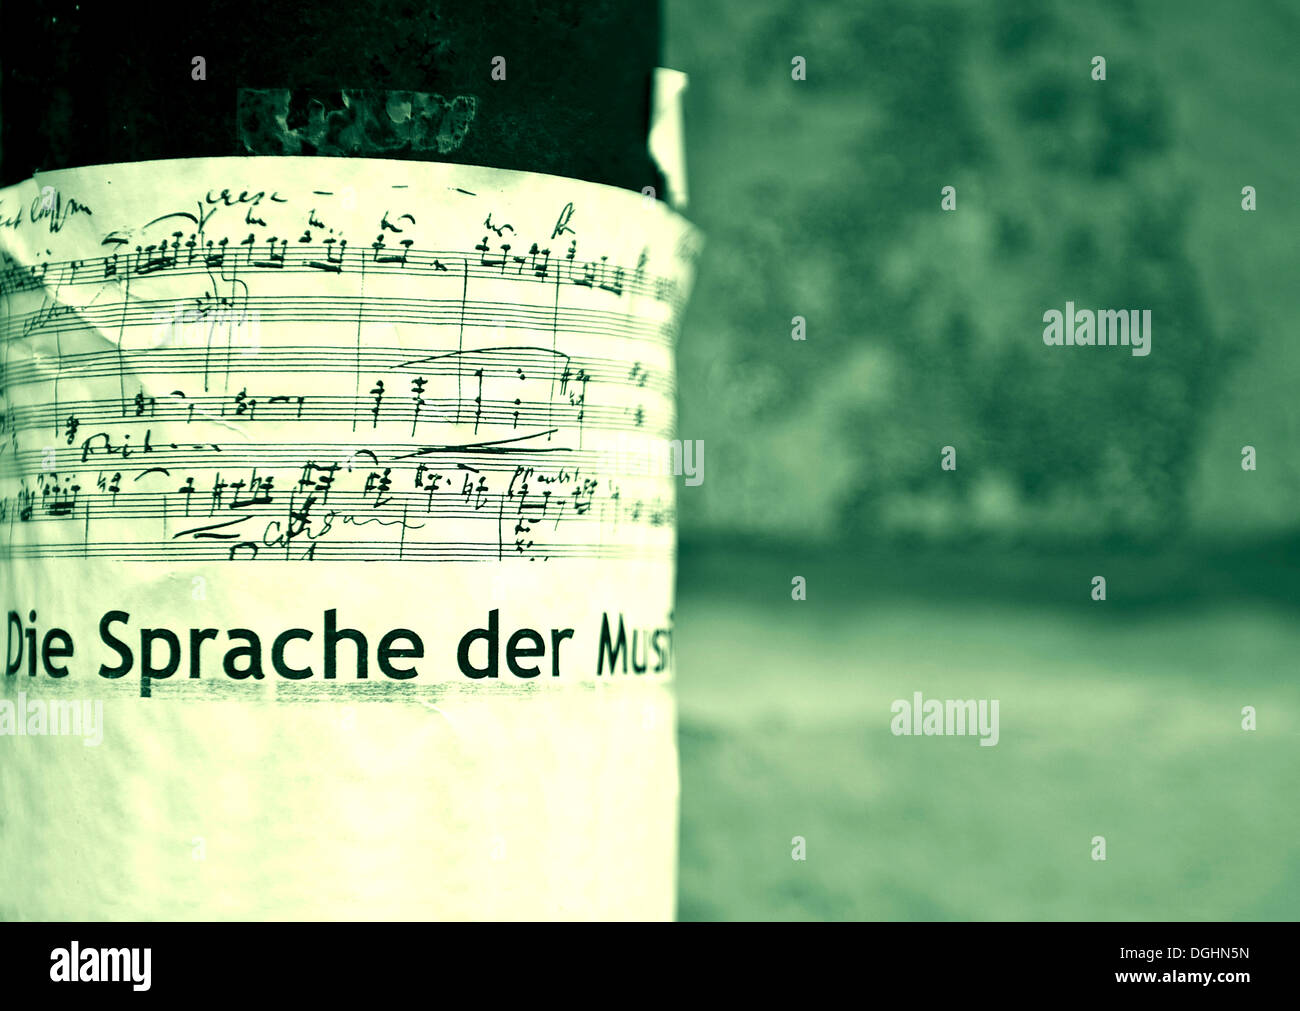 Plakat auf Musik, "Die Sprache der Musik", Deutsch für "Sprache der Musik Stockfoto